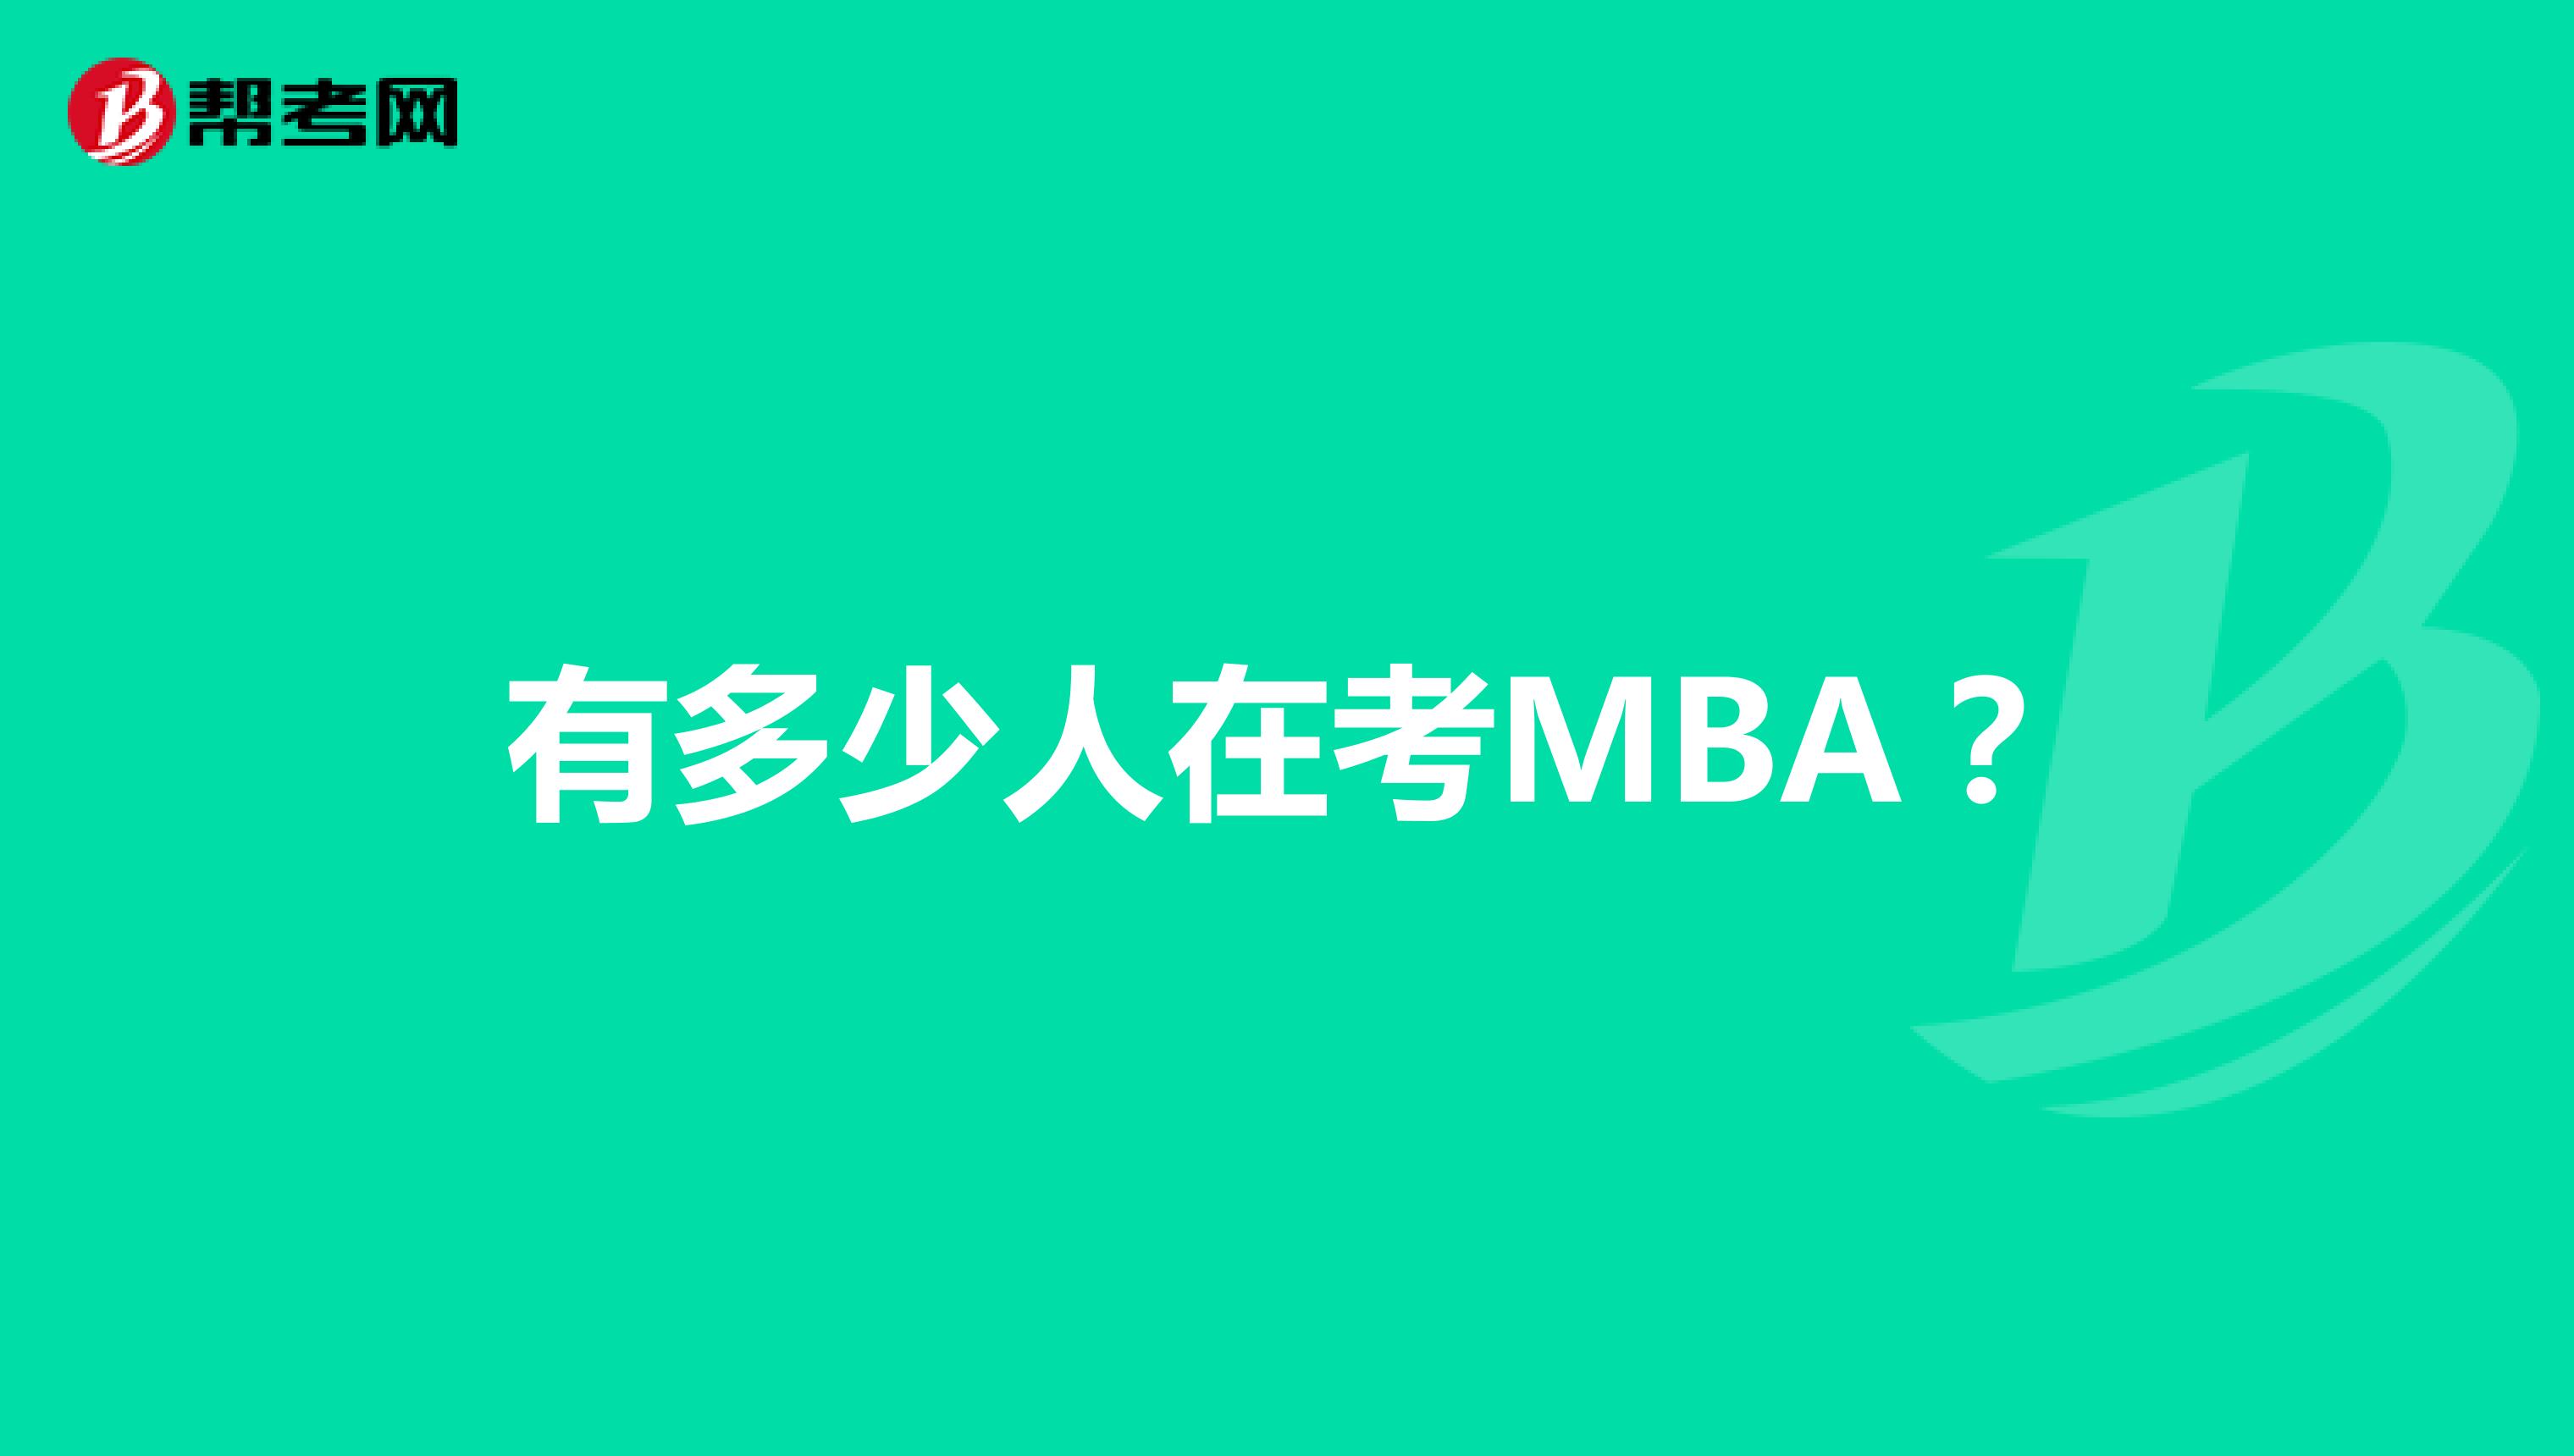 有多少人在考MBA？